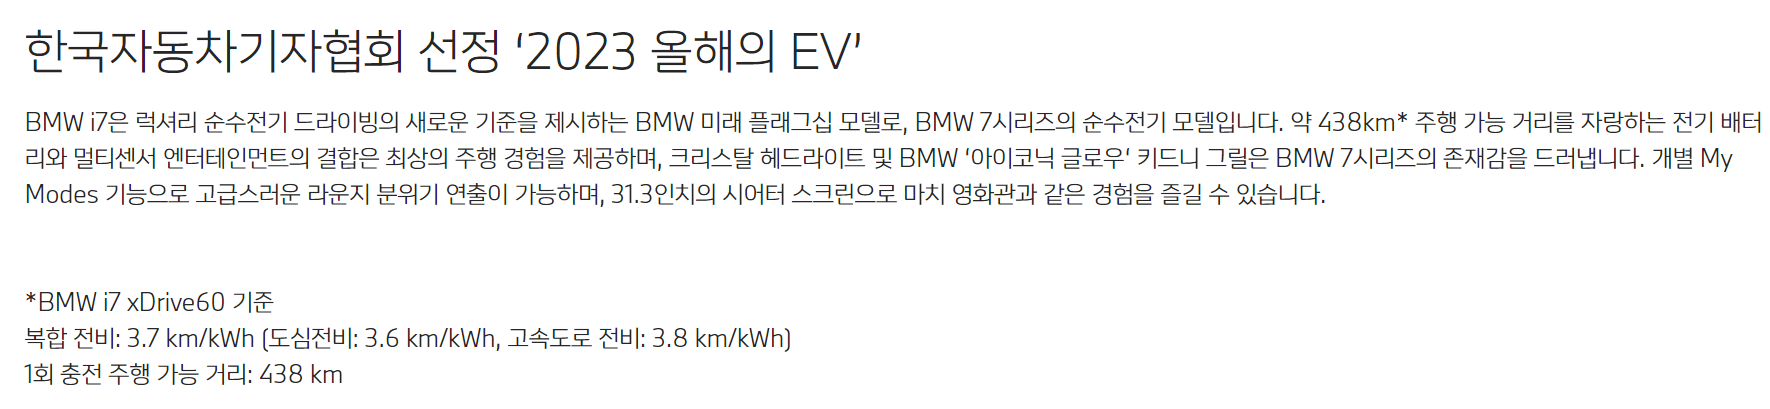 BMW 7시리즈 풀체인지 가격 프로모션 할인율